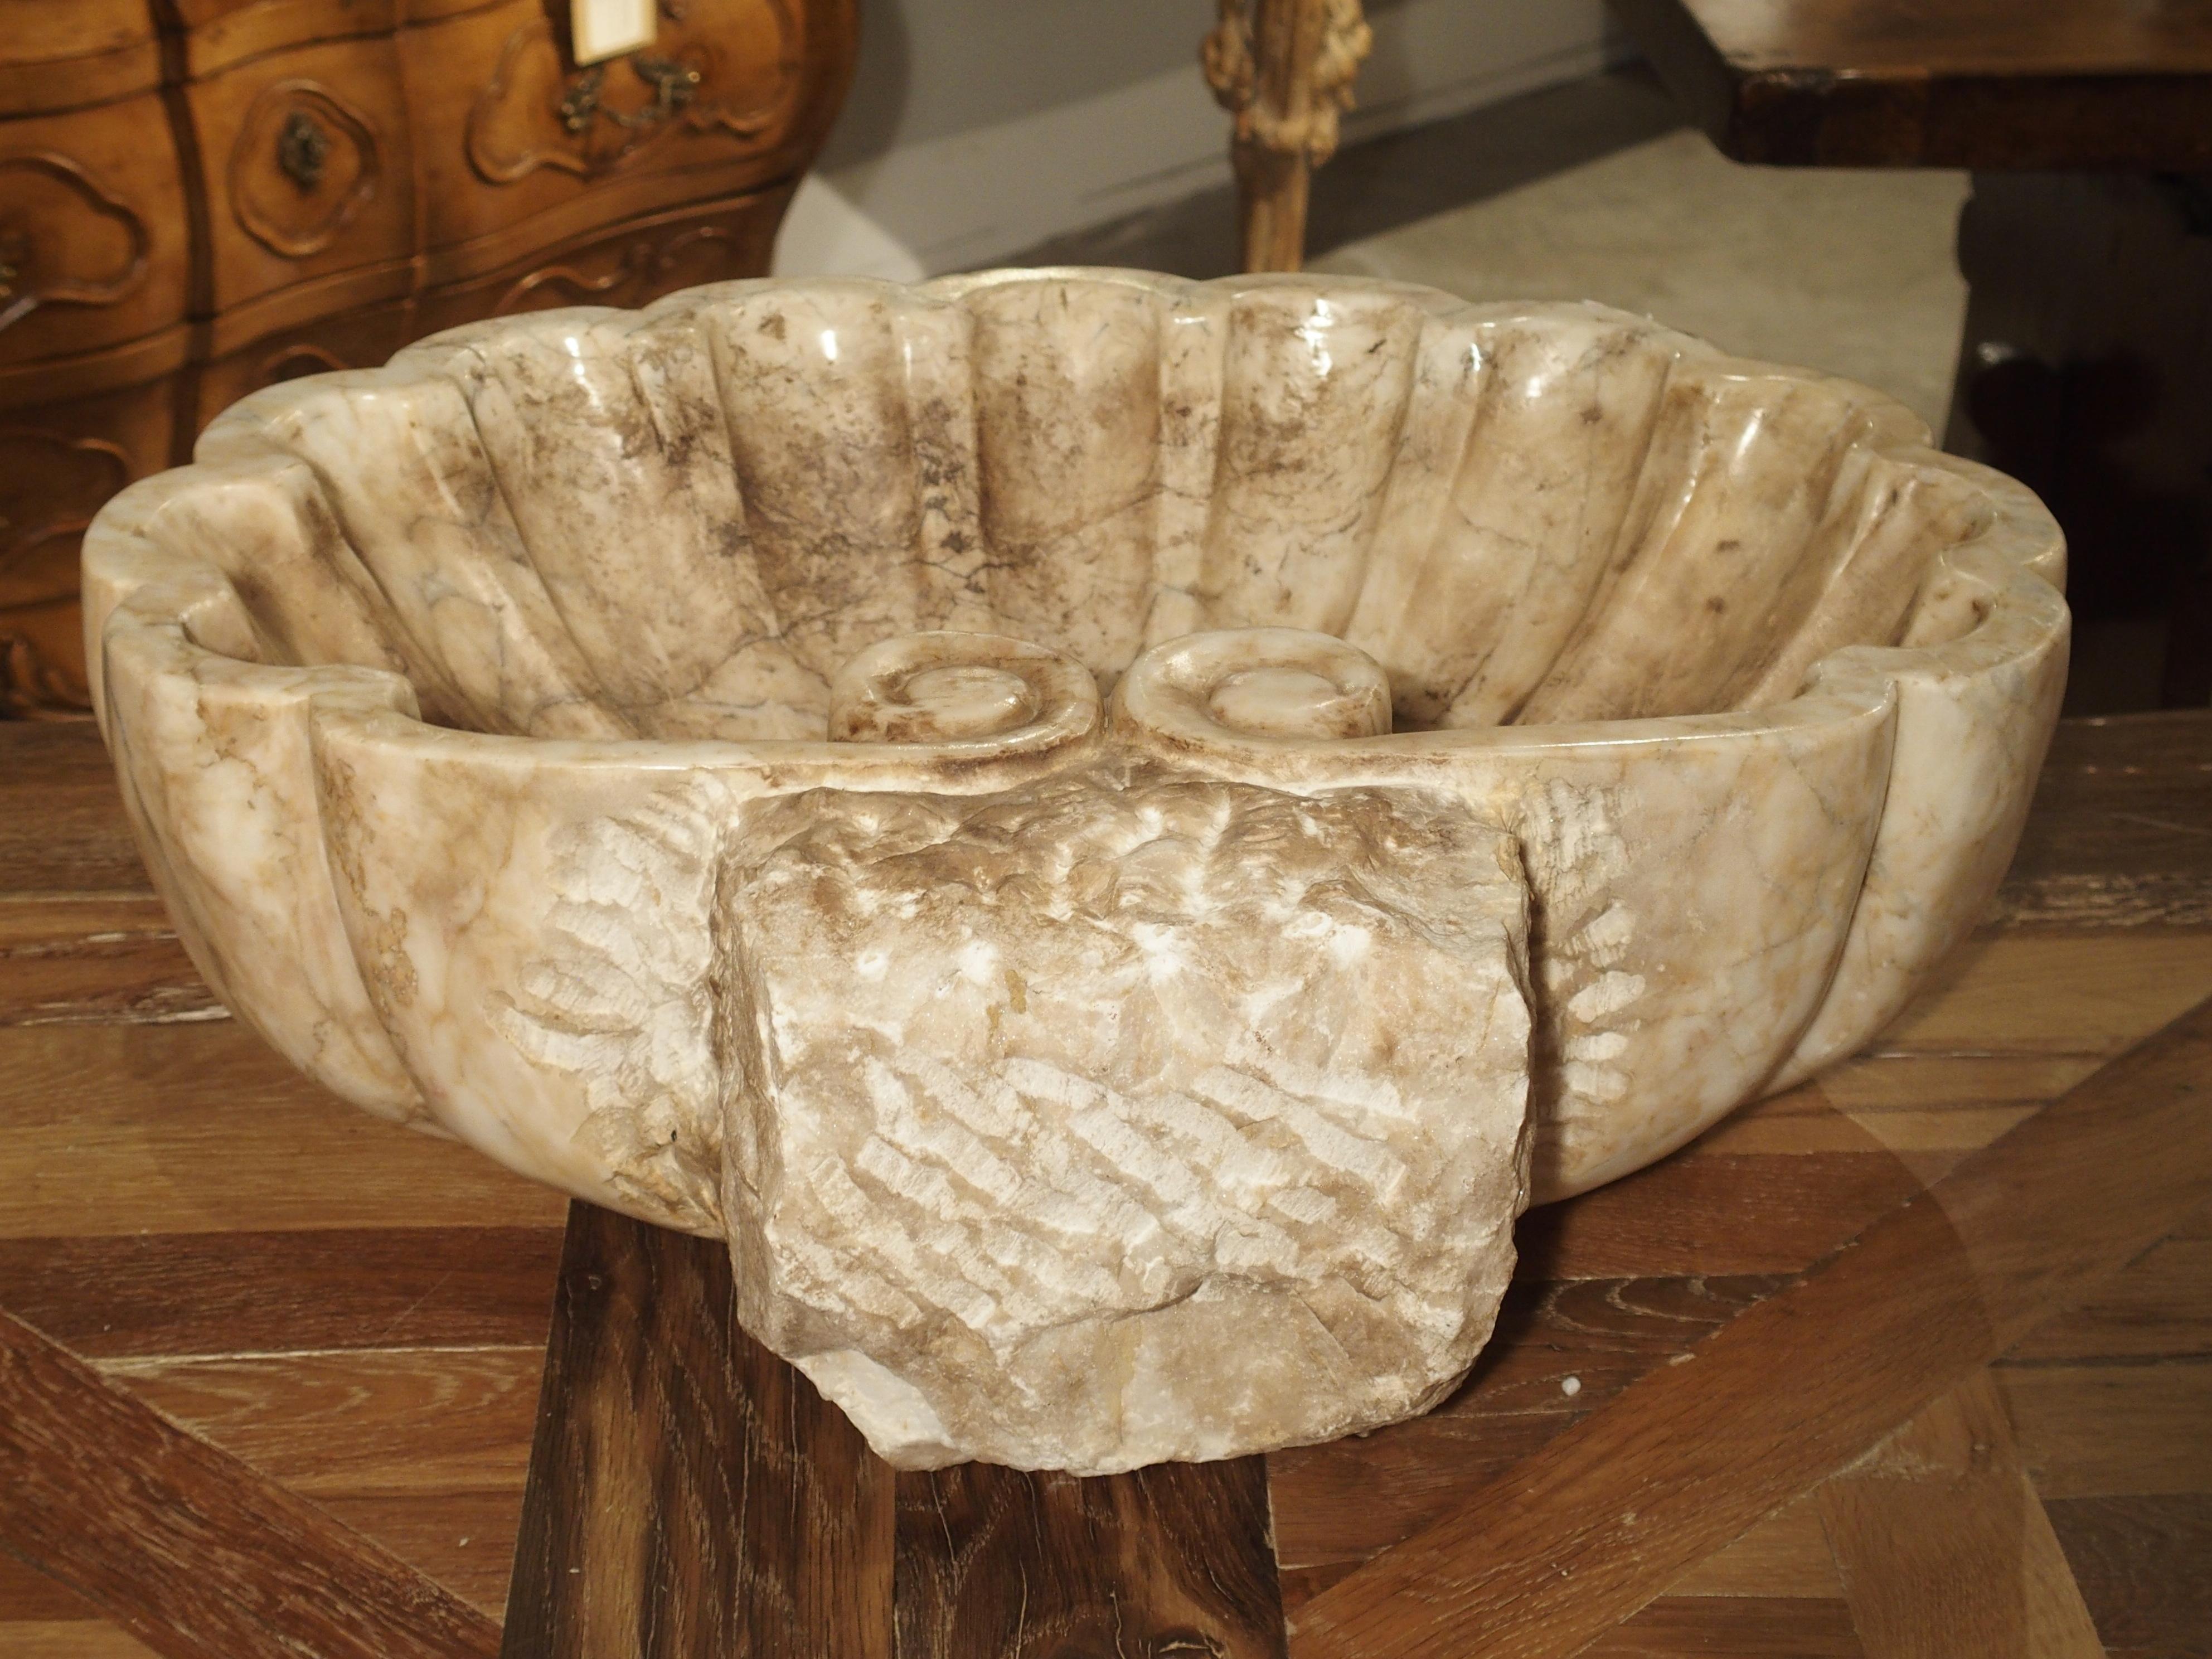 Carved Italian Breccia Marble Shell Form Sink (Breccia-Marmor)